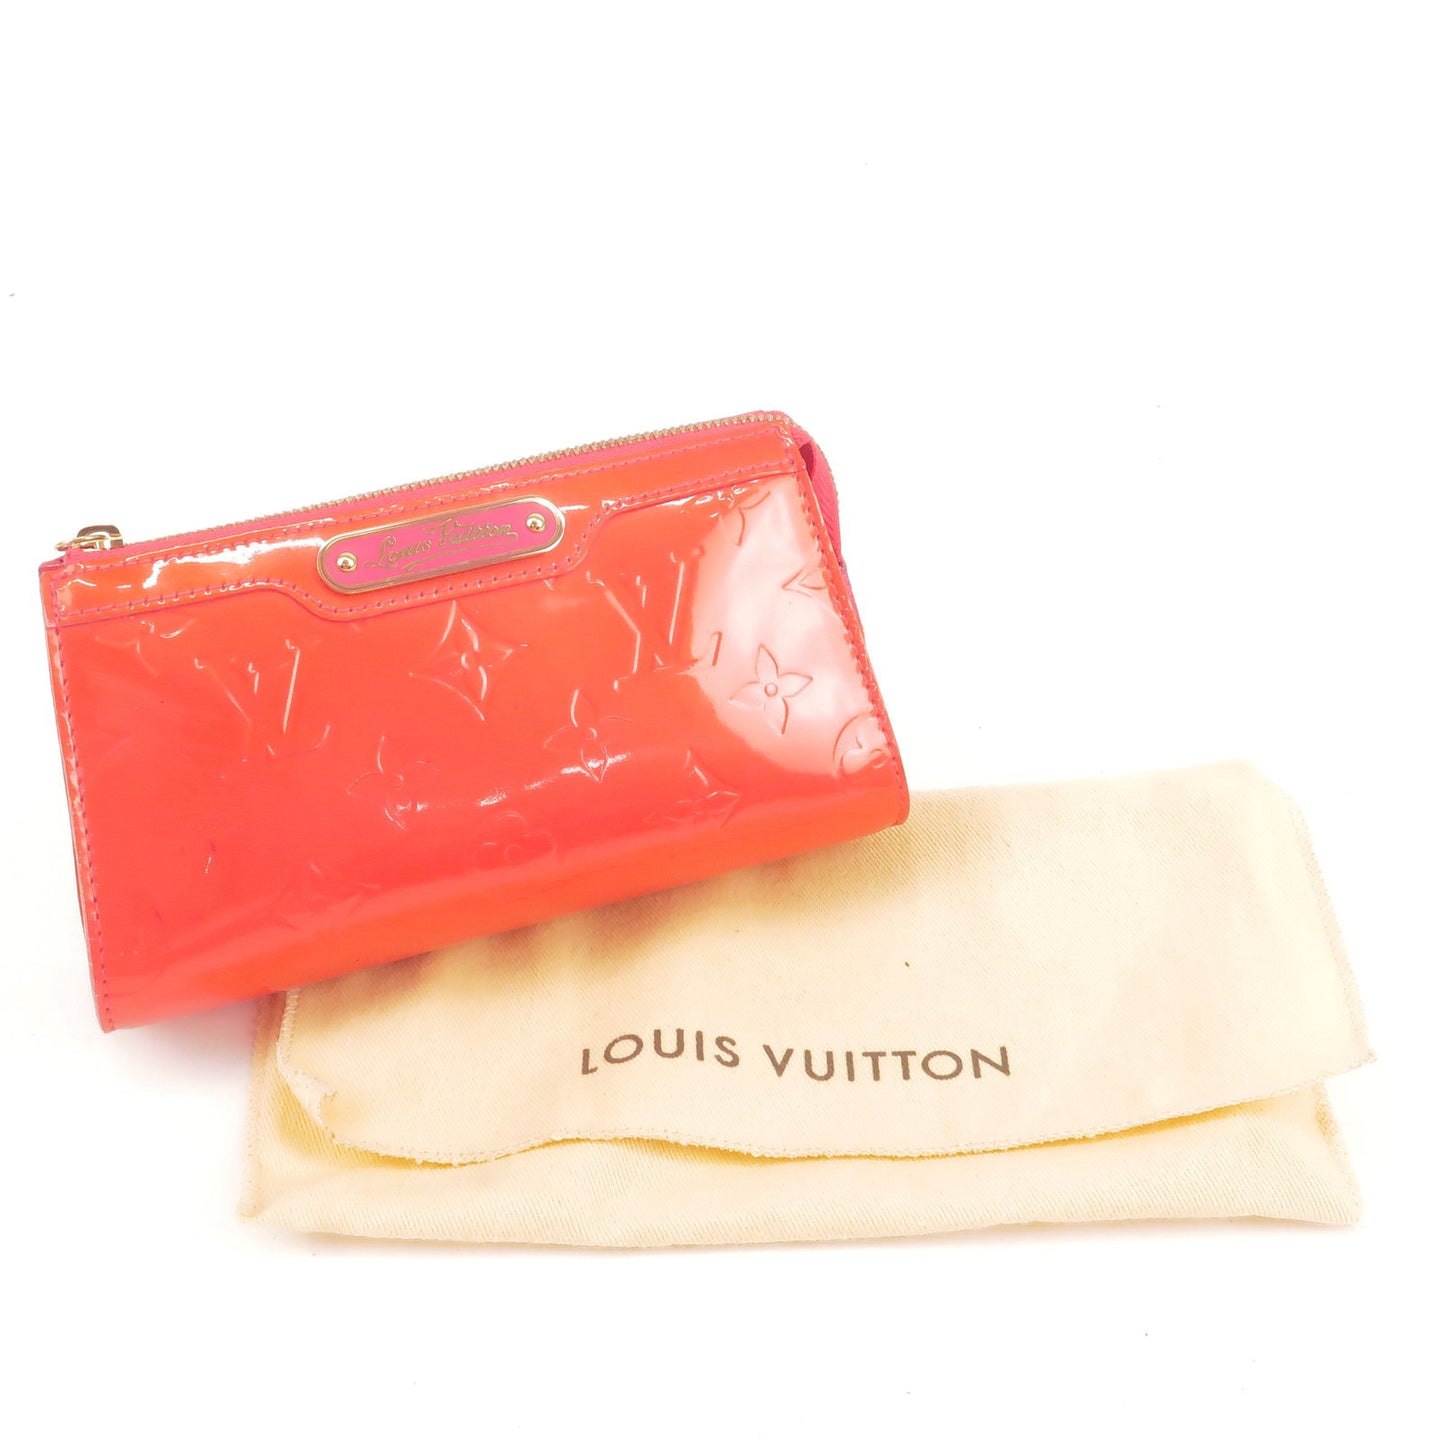 Louis Vuitton Monogram Vernis Trousse Cosmetic Pouch M93647